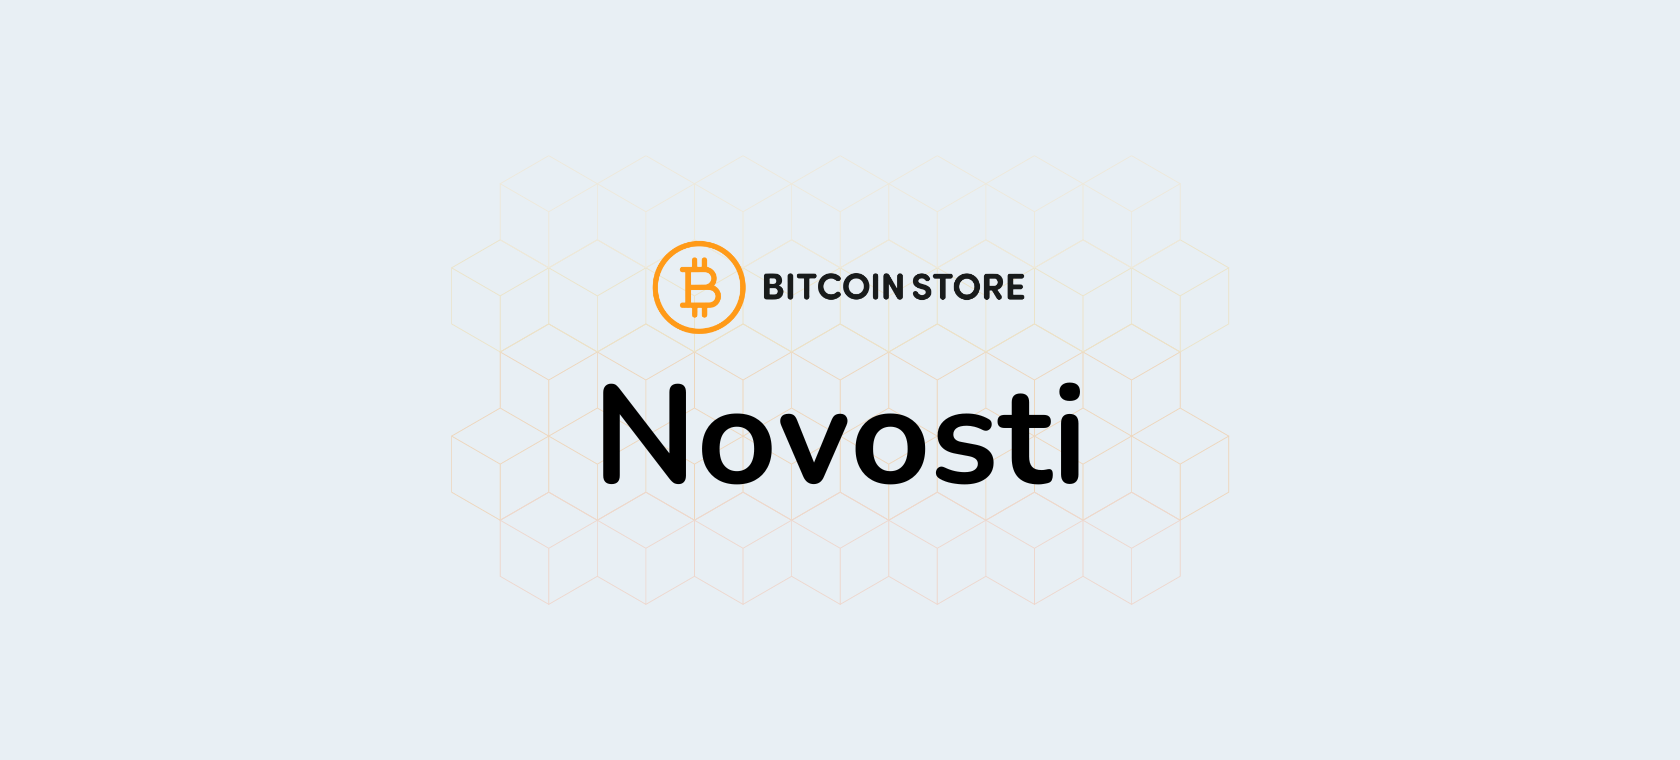 Nove funkcionalnosti Bitcoin Store platforme